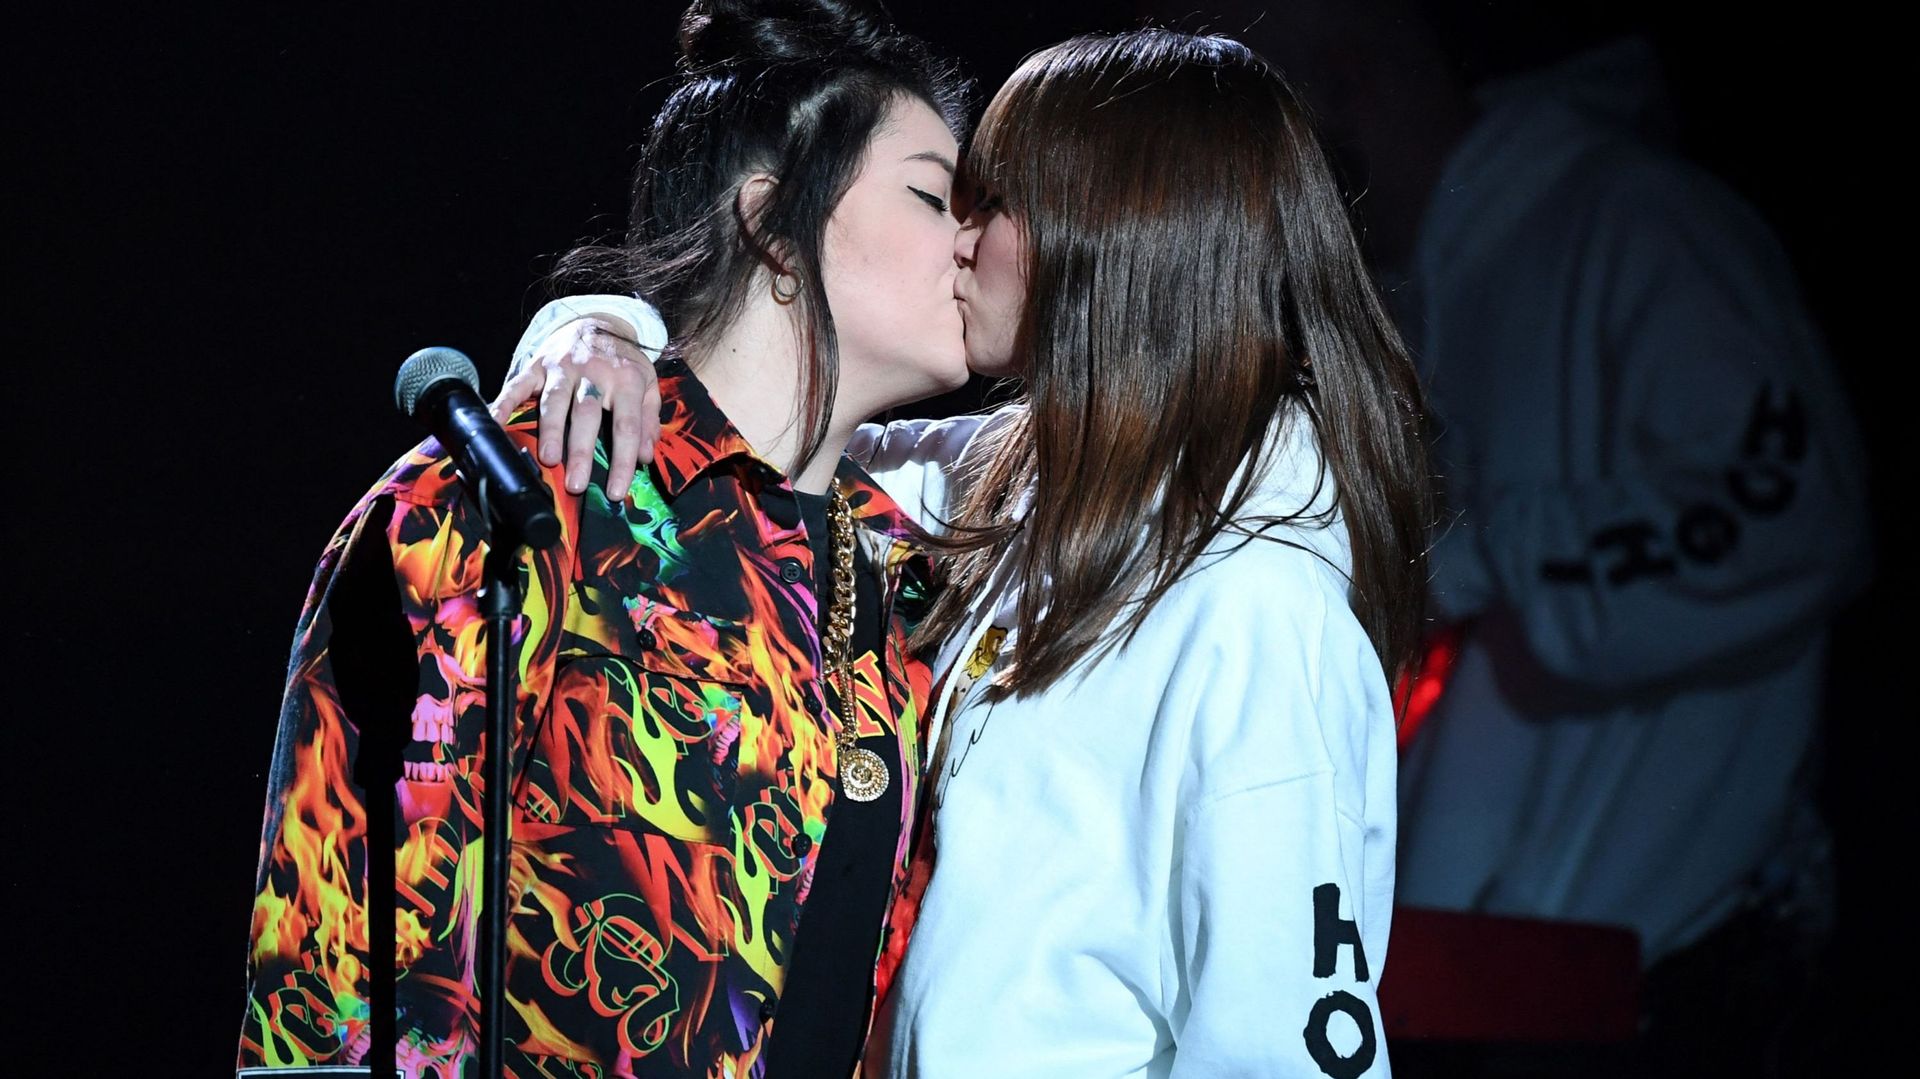 Le baiser entre Hoshi et sa danseuse lors de la cérémonie des Victoires de la Musique 2019 a fait les gros titres de la presse française